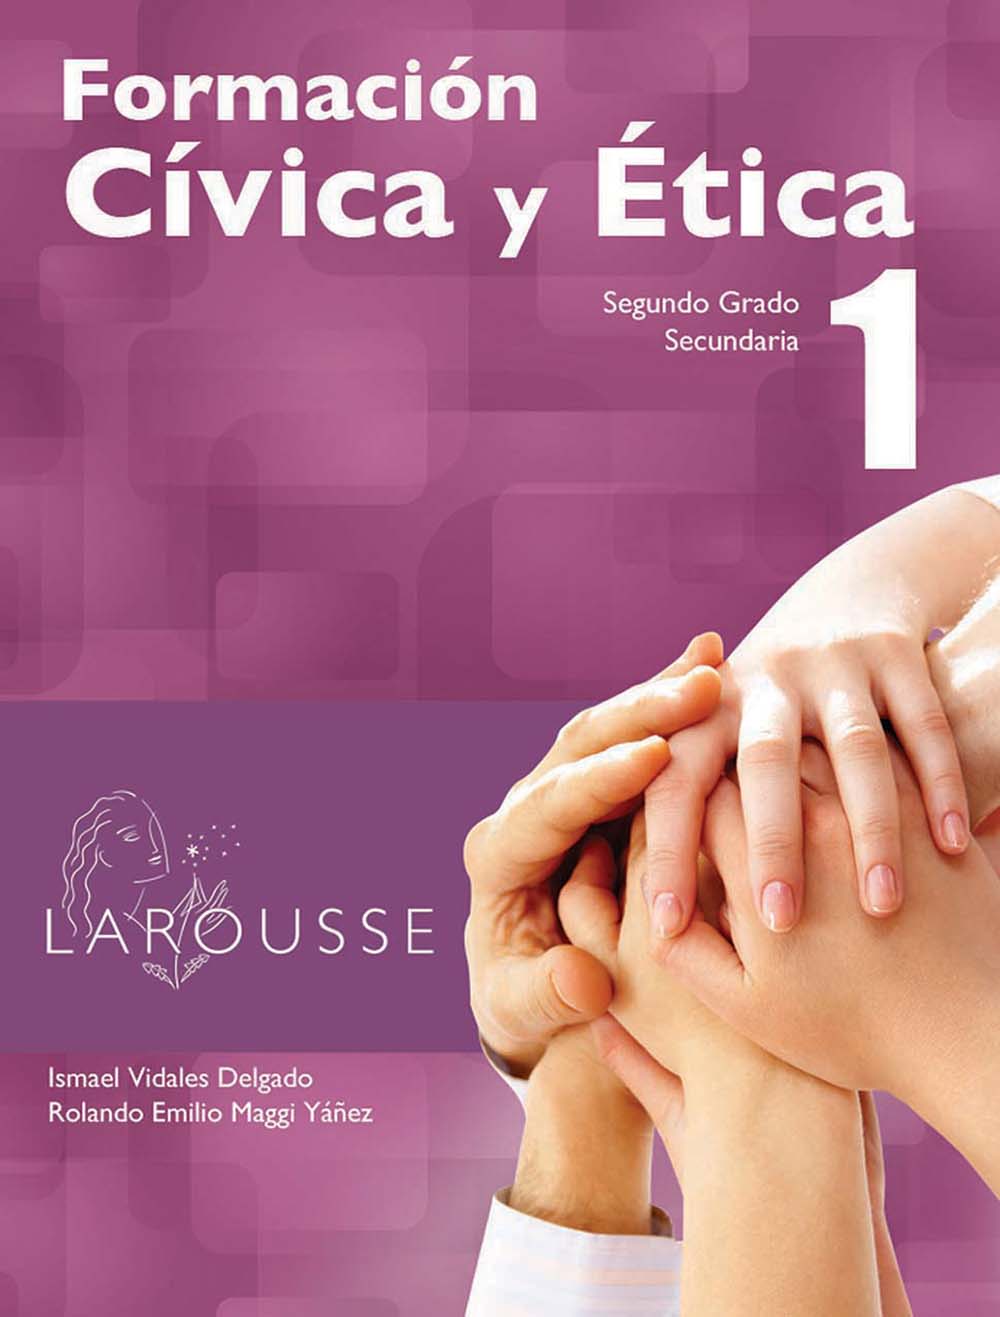 Formación Cívica y Ética 1, Editorial: Ediciones Larousse, Nivel: Secundaria, Grado: 2